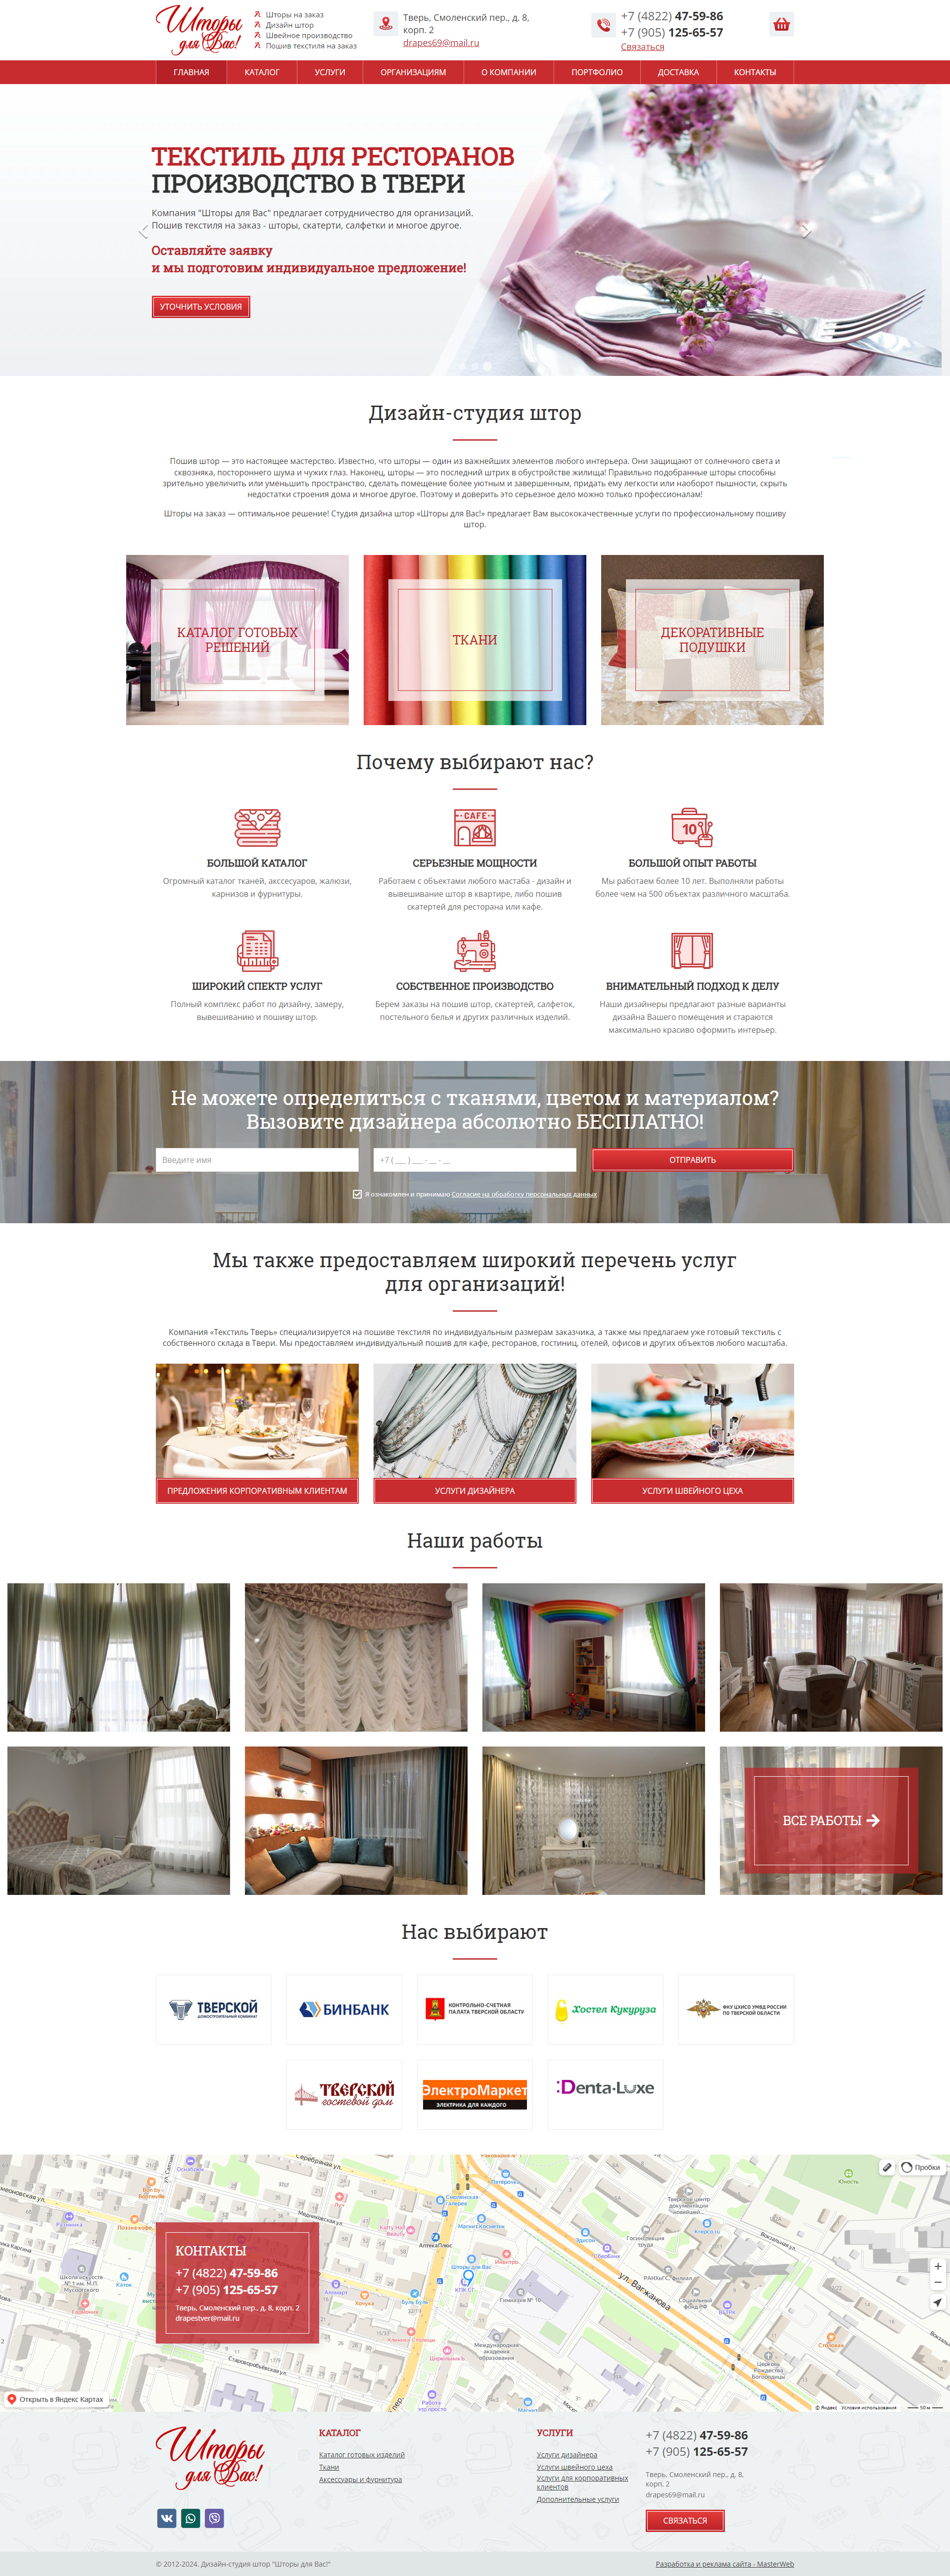 Разработка и реклама сайта дизайн студии штор — фото-560_3